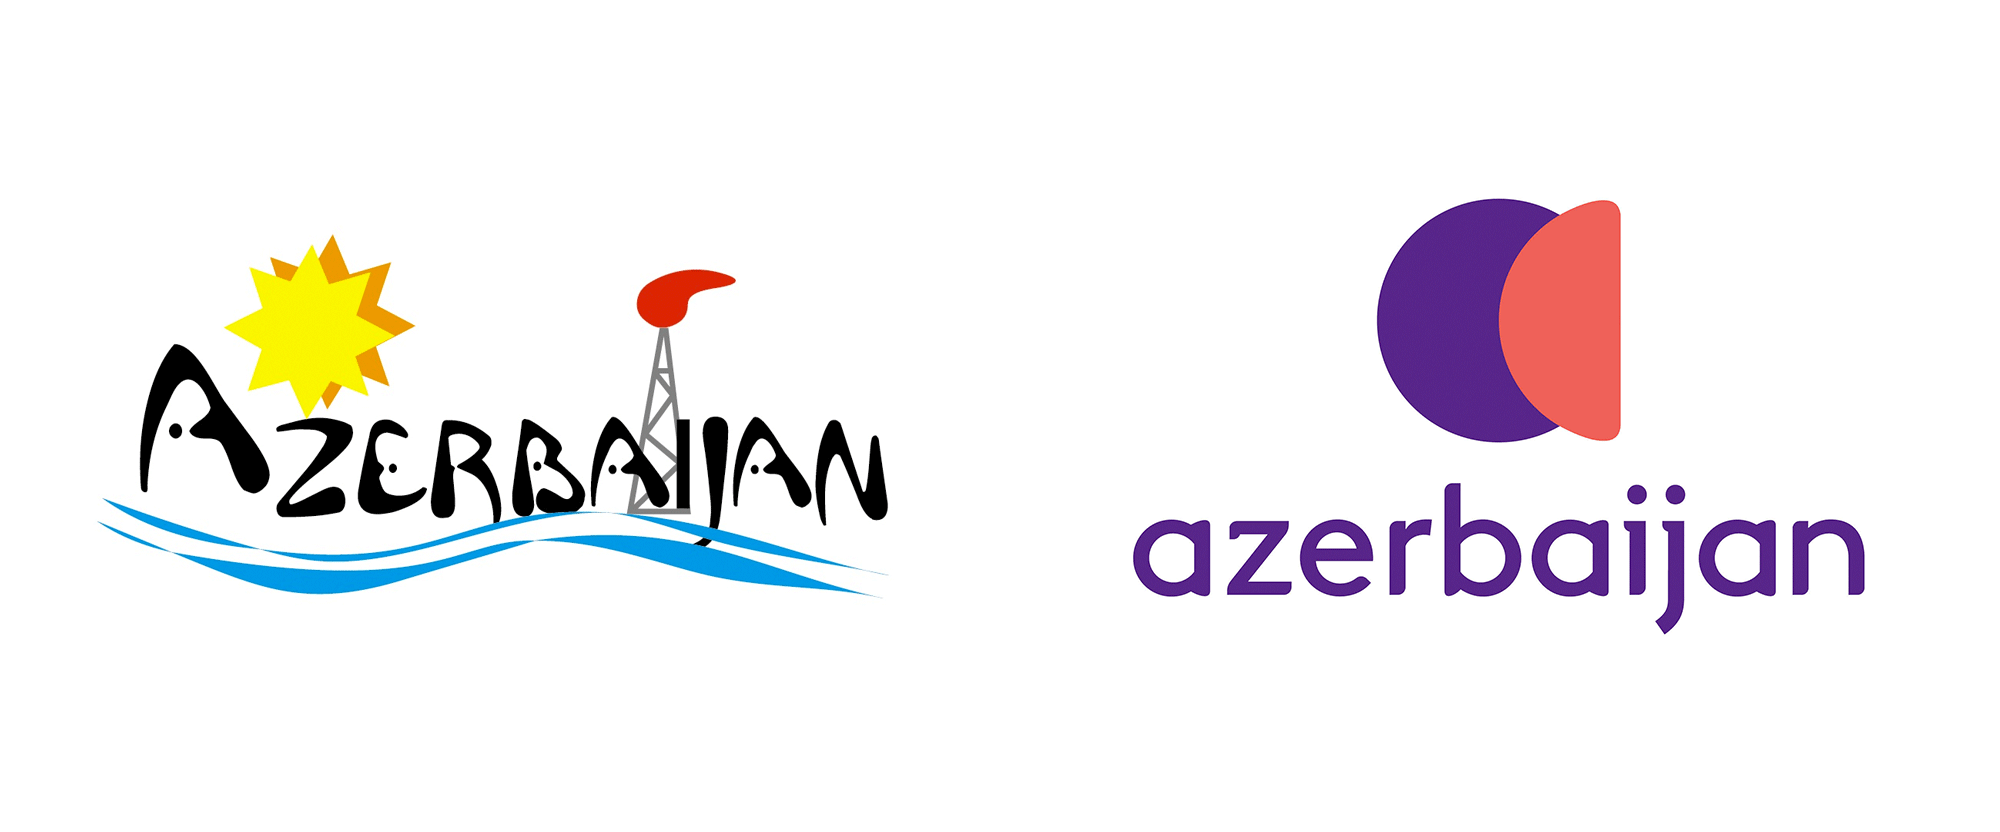 Tourism Logo - Brand New: New Logo for Azerbaijan (Tourism) by Landor